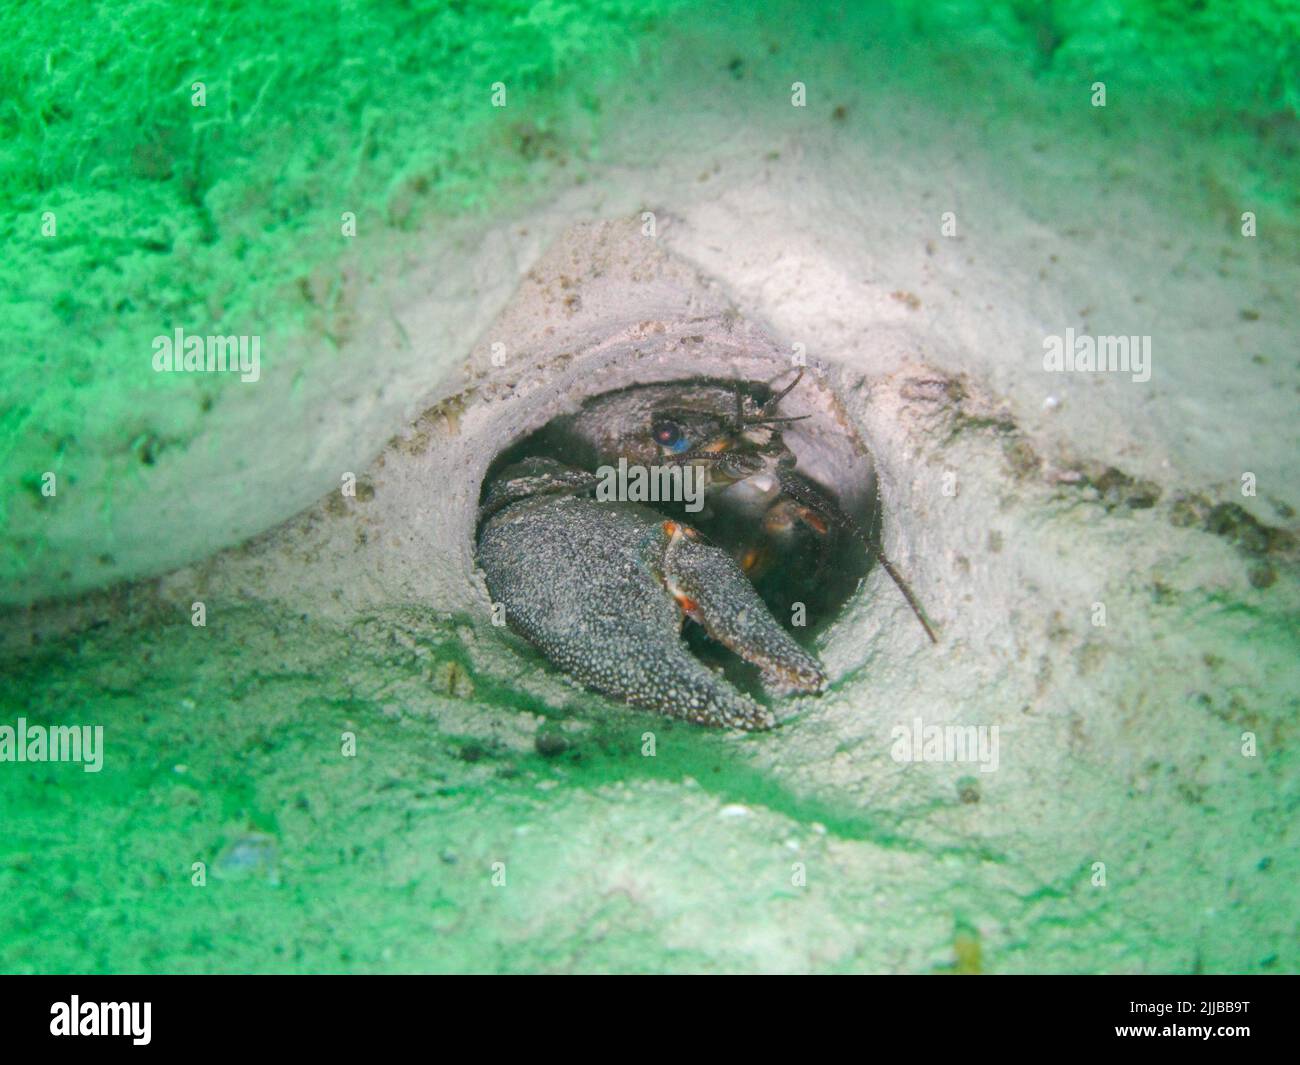 Señale el cangrejo de río (Pacipastacus leniusculus) en un agujero. Especies invasoras en lagos suizos. La fotografía fue tomada durante el buceo en el lago de Neu Foto de stock